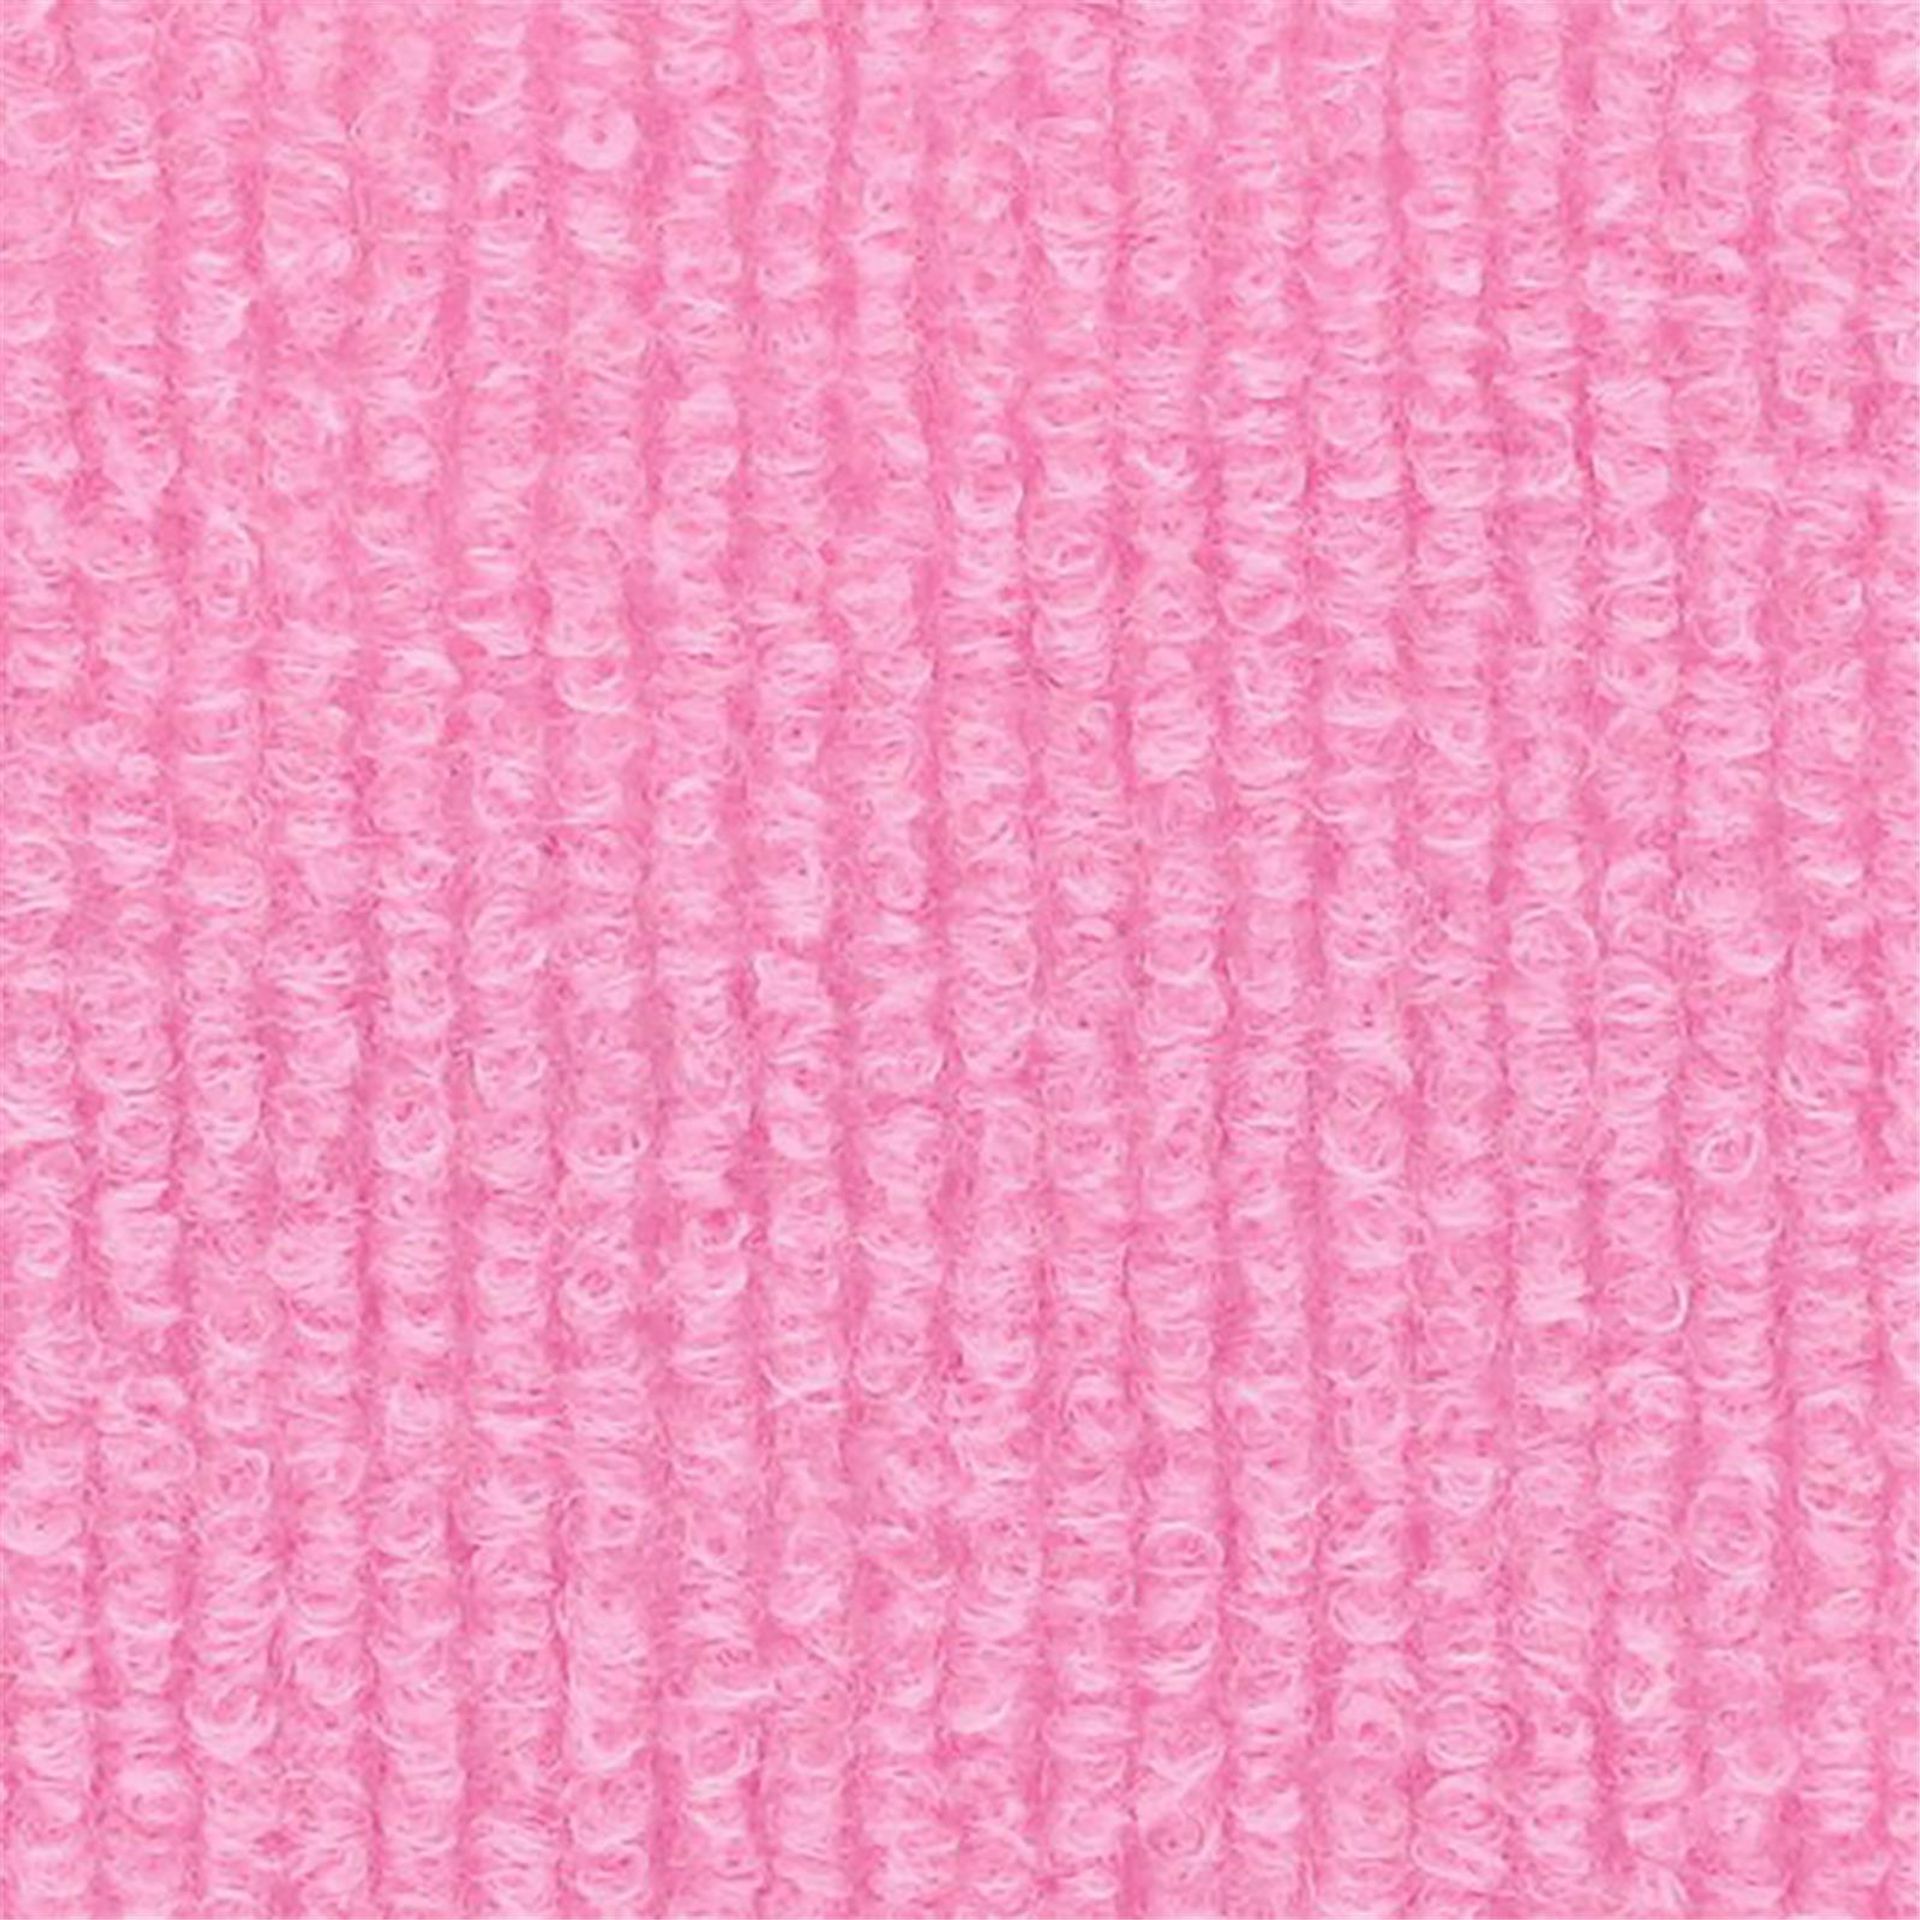 Messeboden Rips-Nadelvlies EXPOLINE Candy Pink 1722 100qm ohne Schutzfolie - Rollenbreite 200 cm